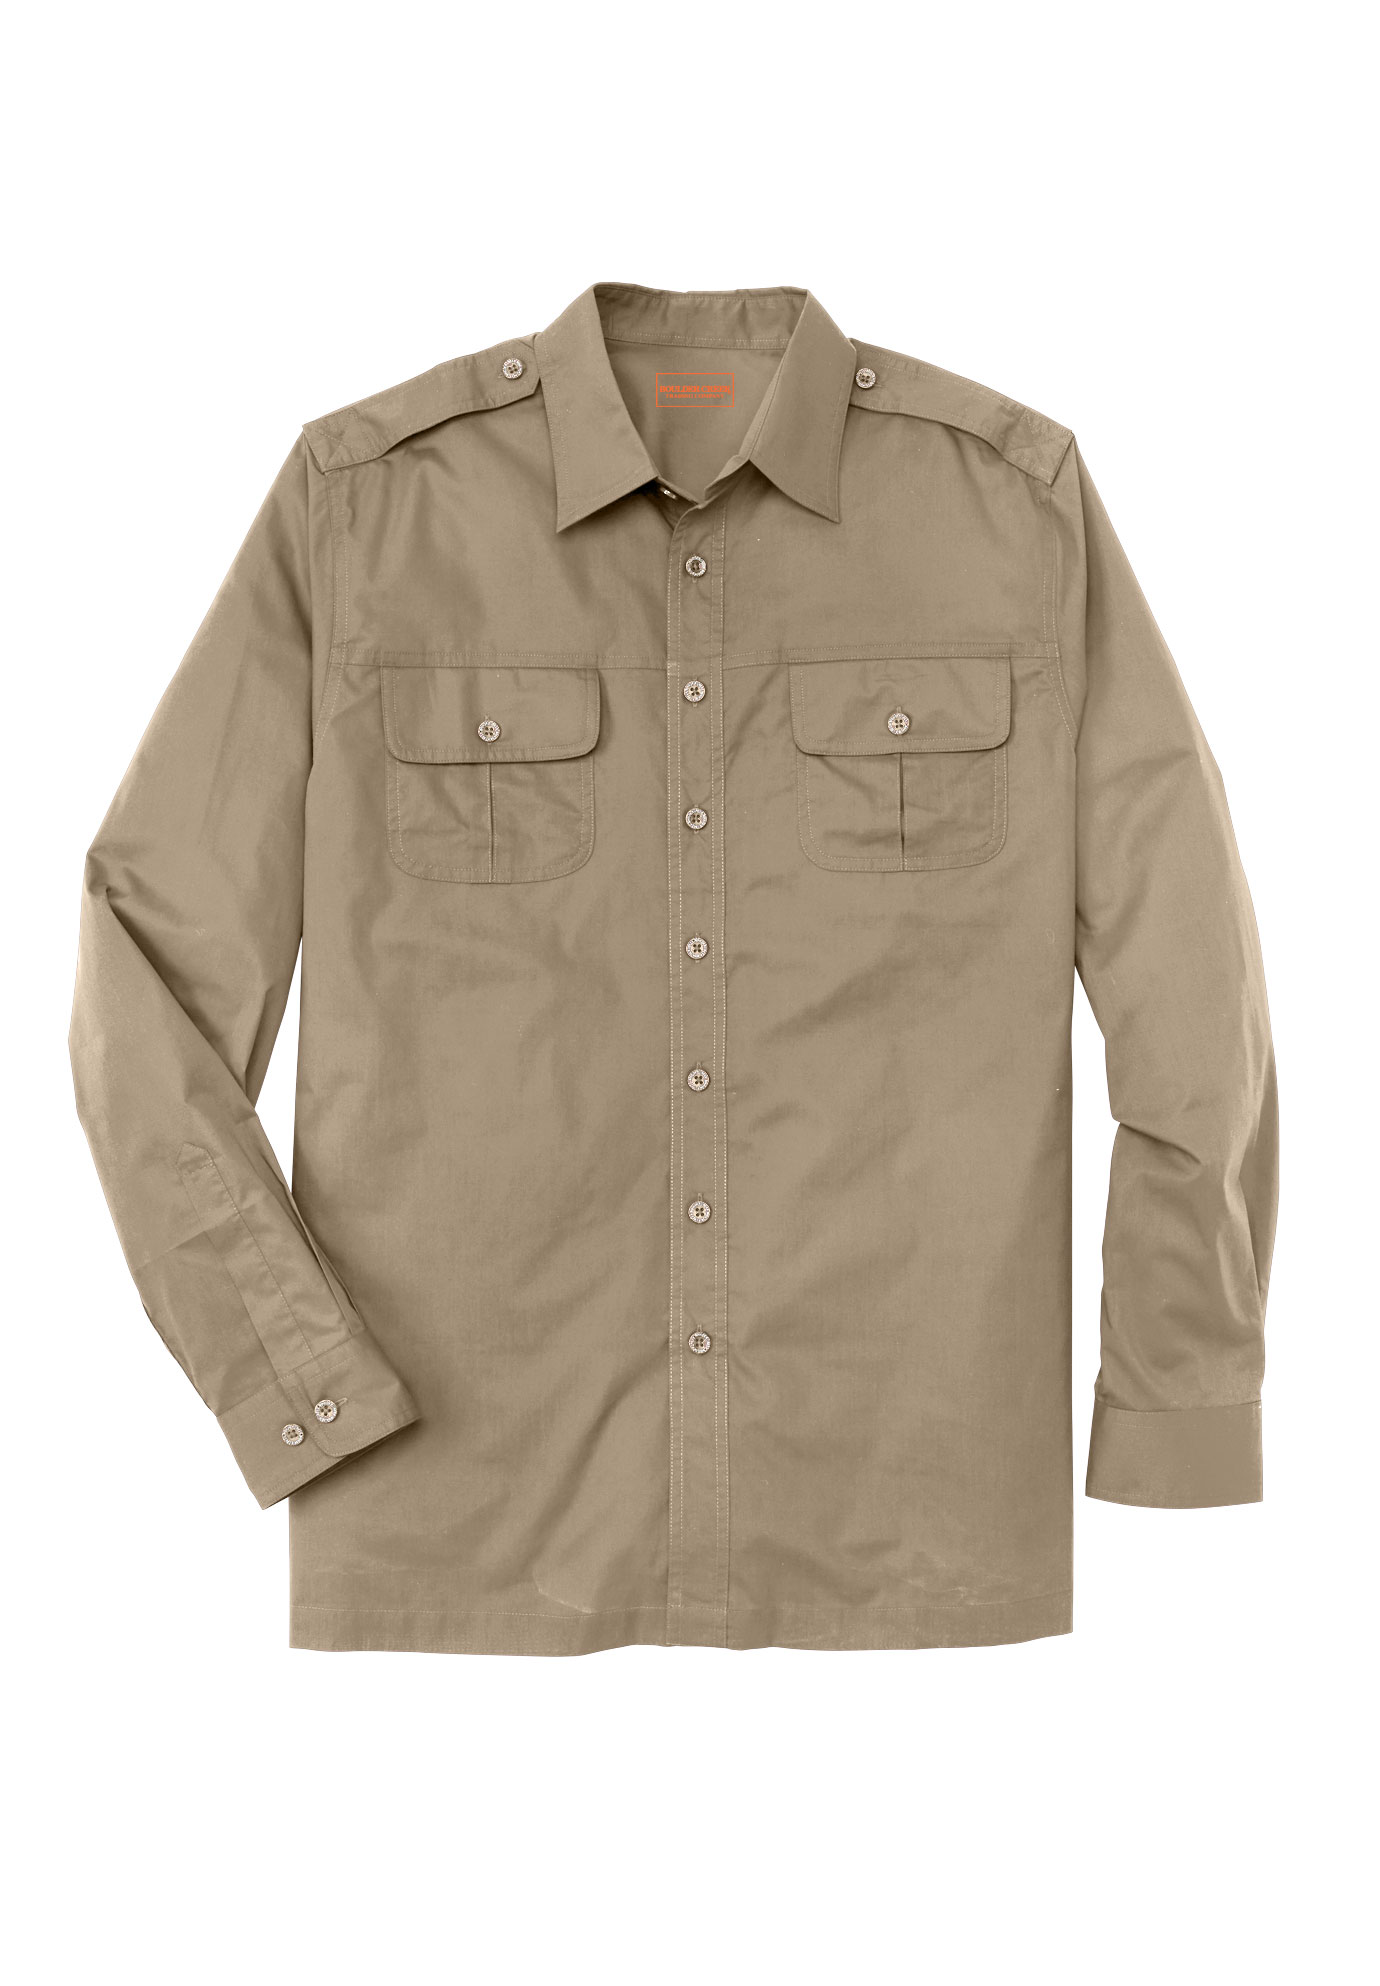 Boulder Creek by Kingsize Mens Big /& Tall Short Sleeve Pilot Shirt by